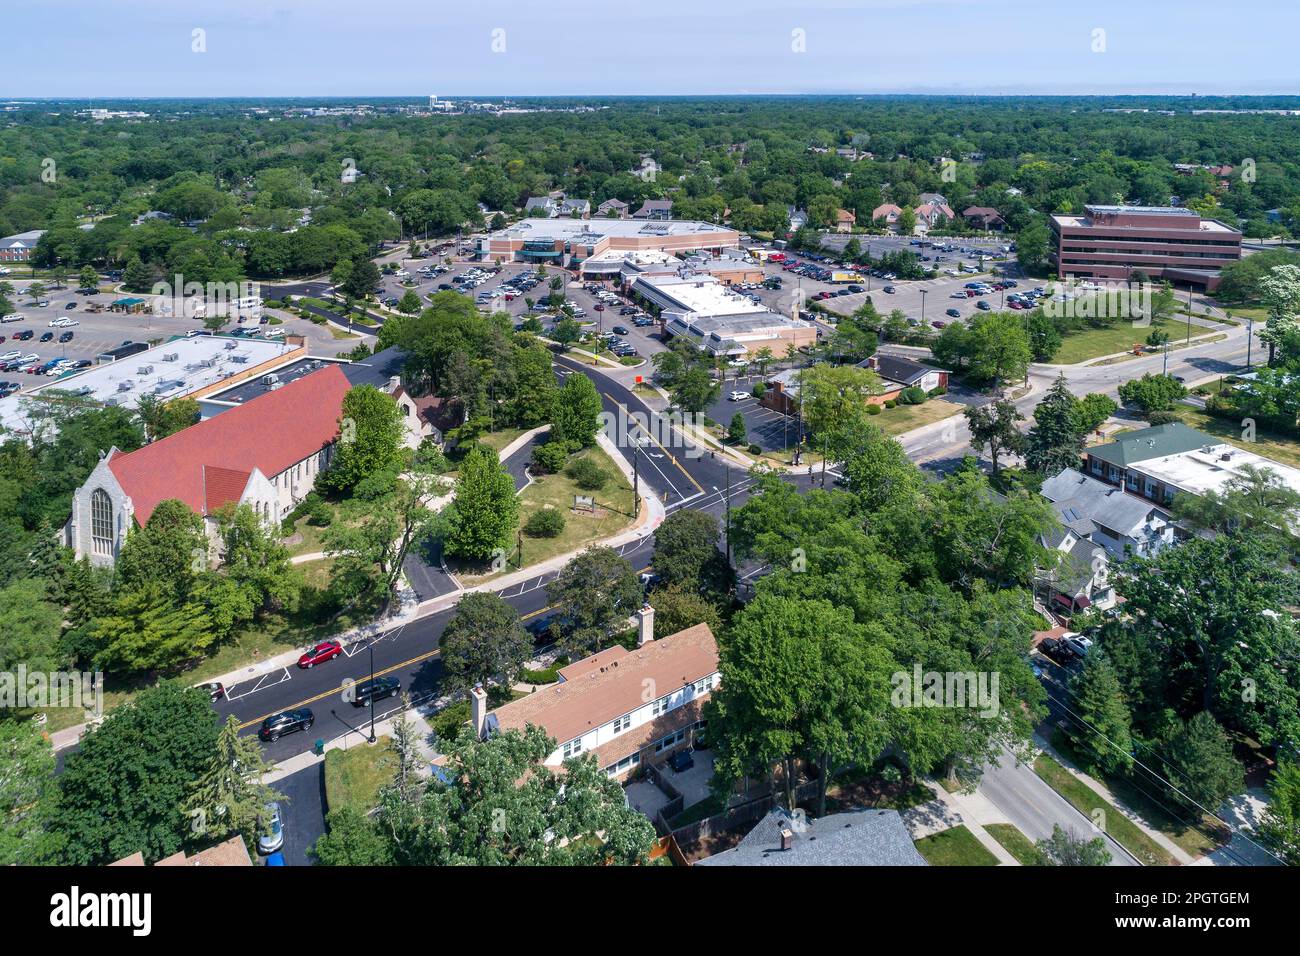 Vue aérienne d'un quartier d'affaires avec des magasins, une église et un centre commercial dans le centre-ville de Northbrook, il. Banque D'Images